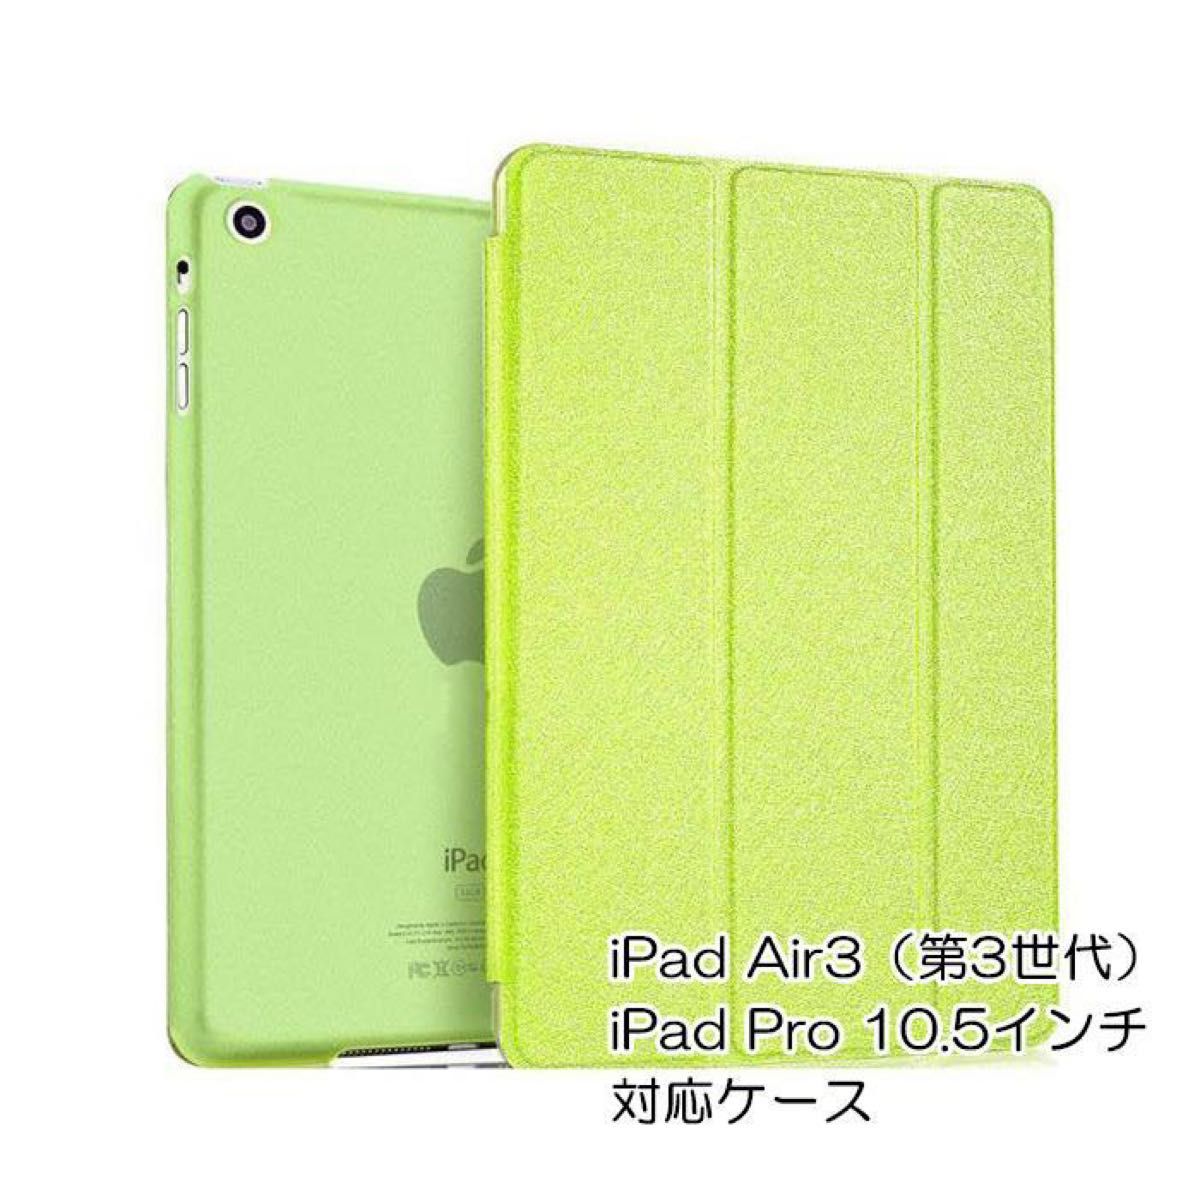 iPad Air3 ケース Air 第3世代 iPadPro 10.5インチ 対応 カバー オートスリープ